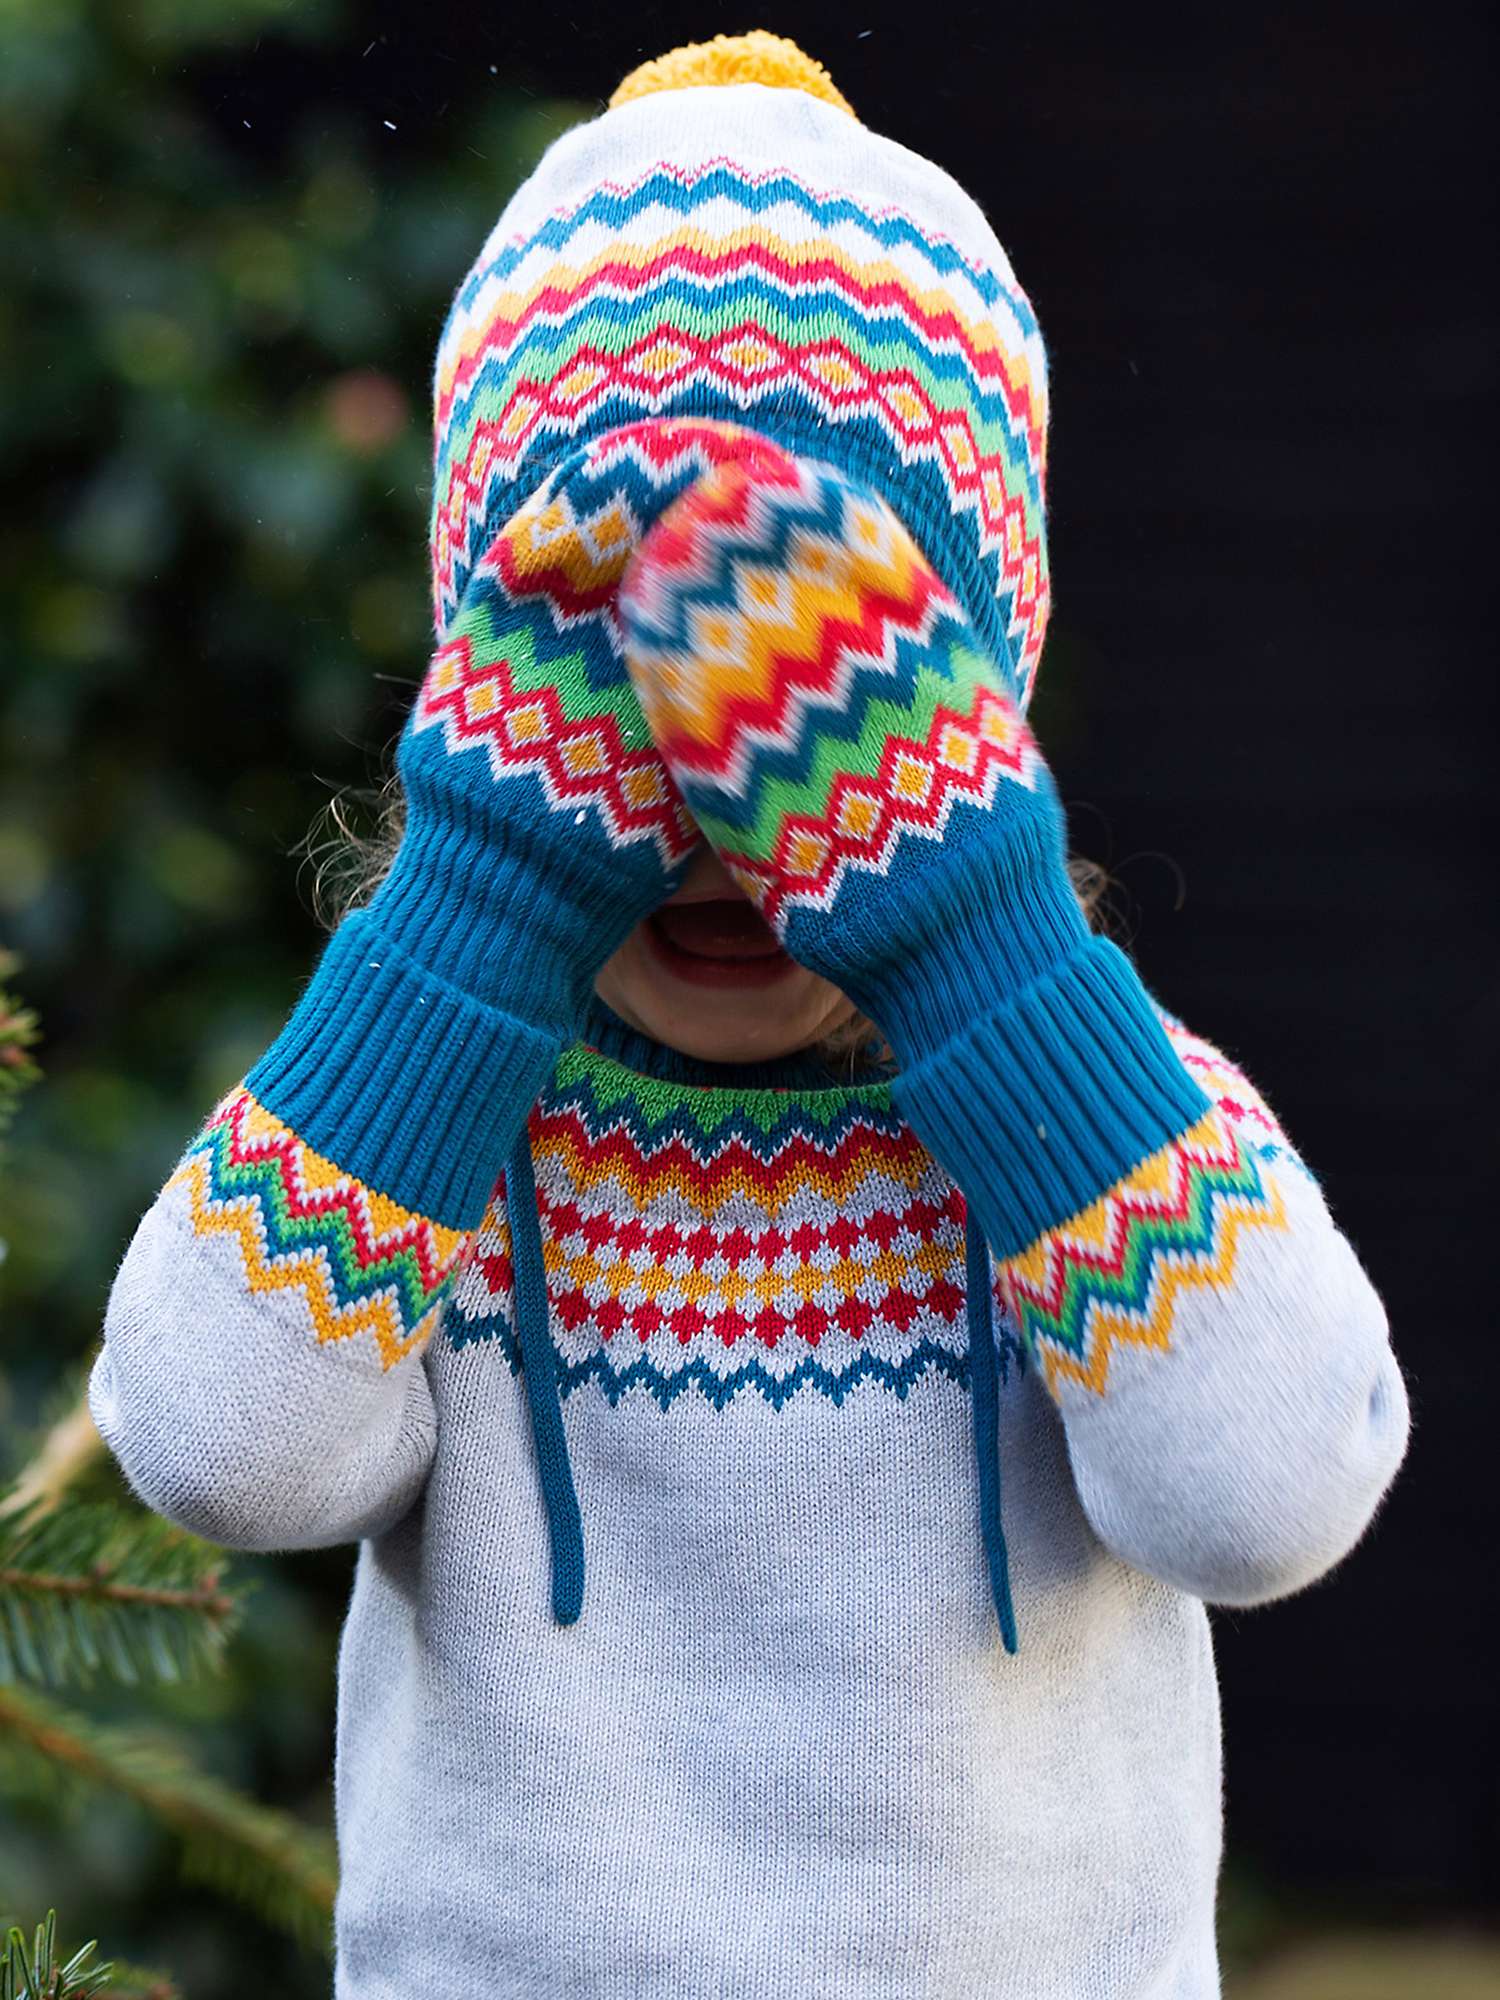 Buy Frugi Baby Fairisle Organic Cotton Knitted Hat & Mitten Set, Grey Marl/Multi Online at johnlewis.com